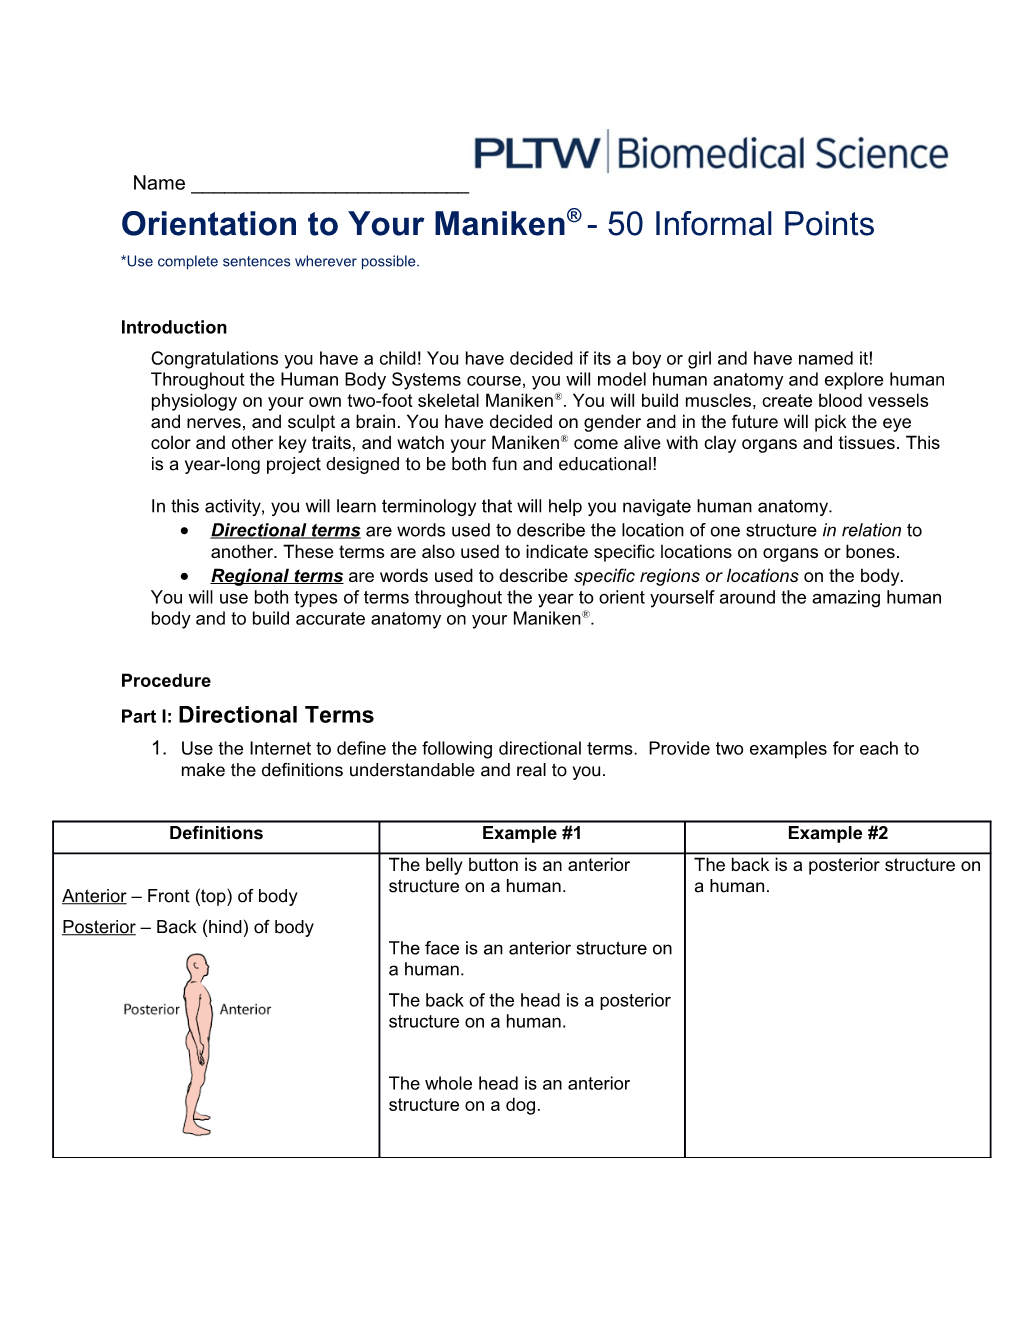 Orientation to Your Maniken - 50 Informal Points